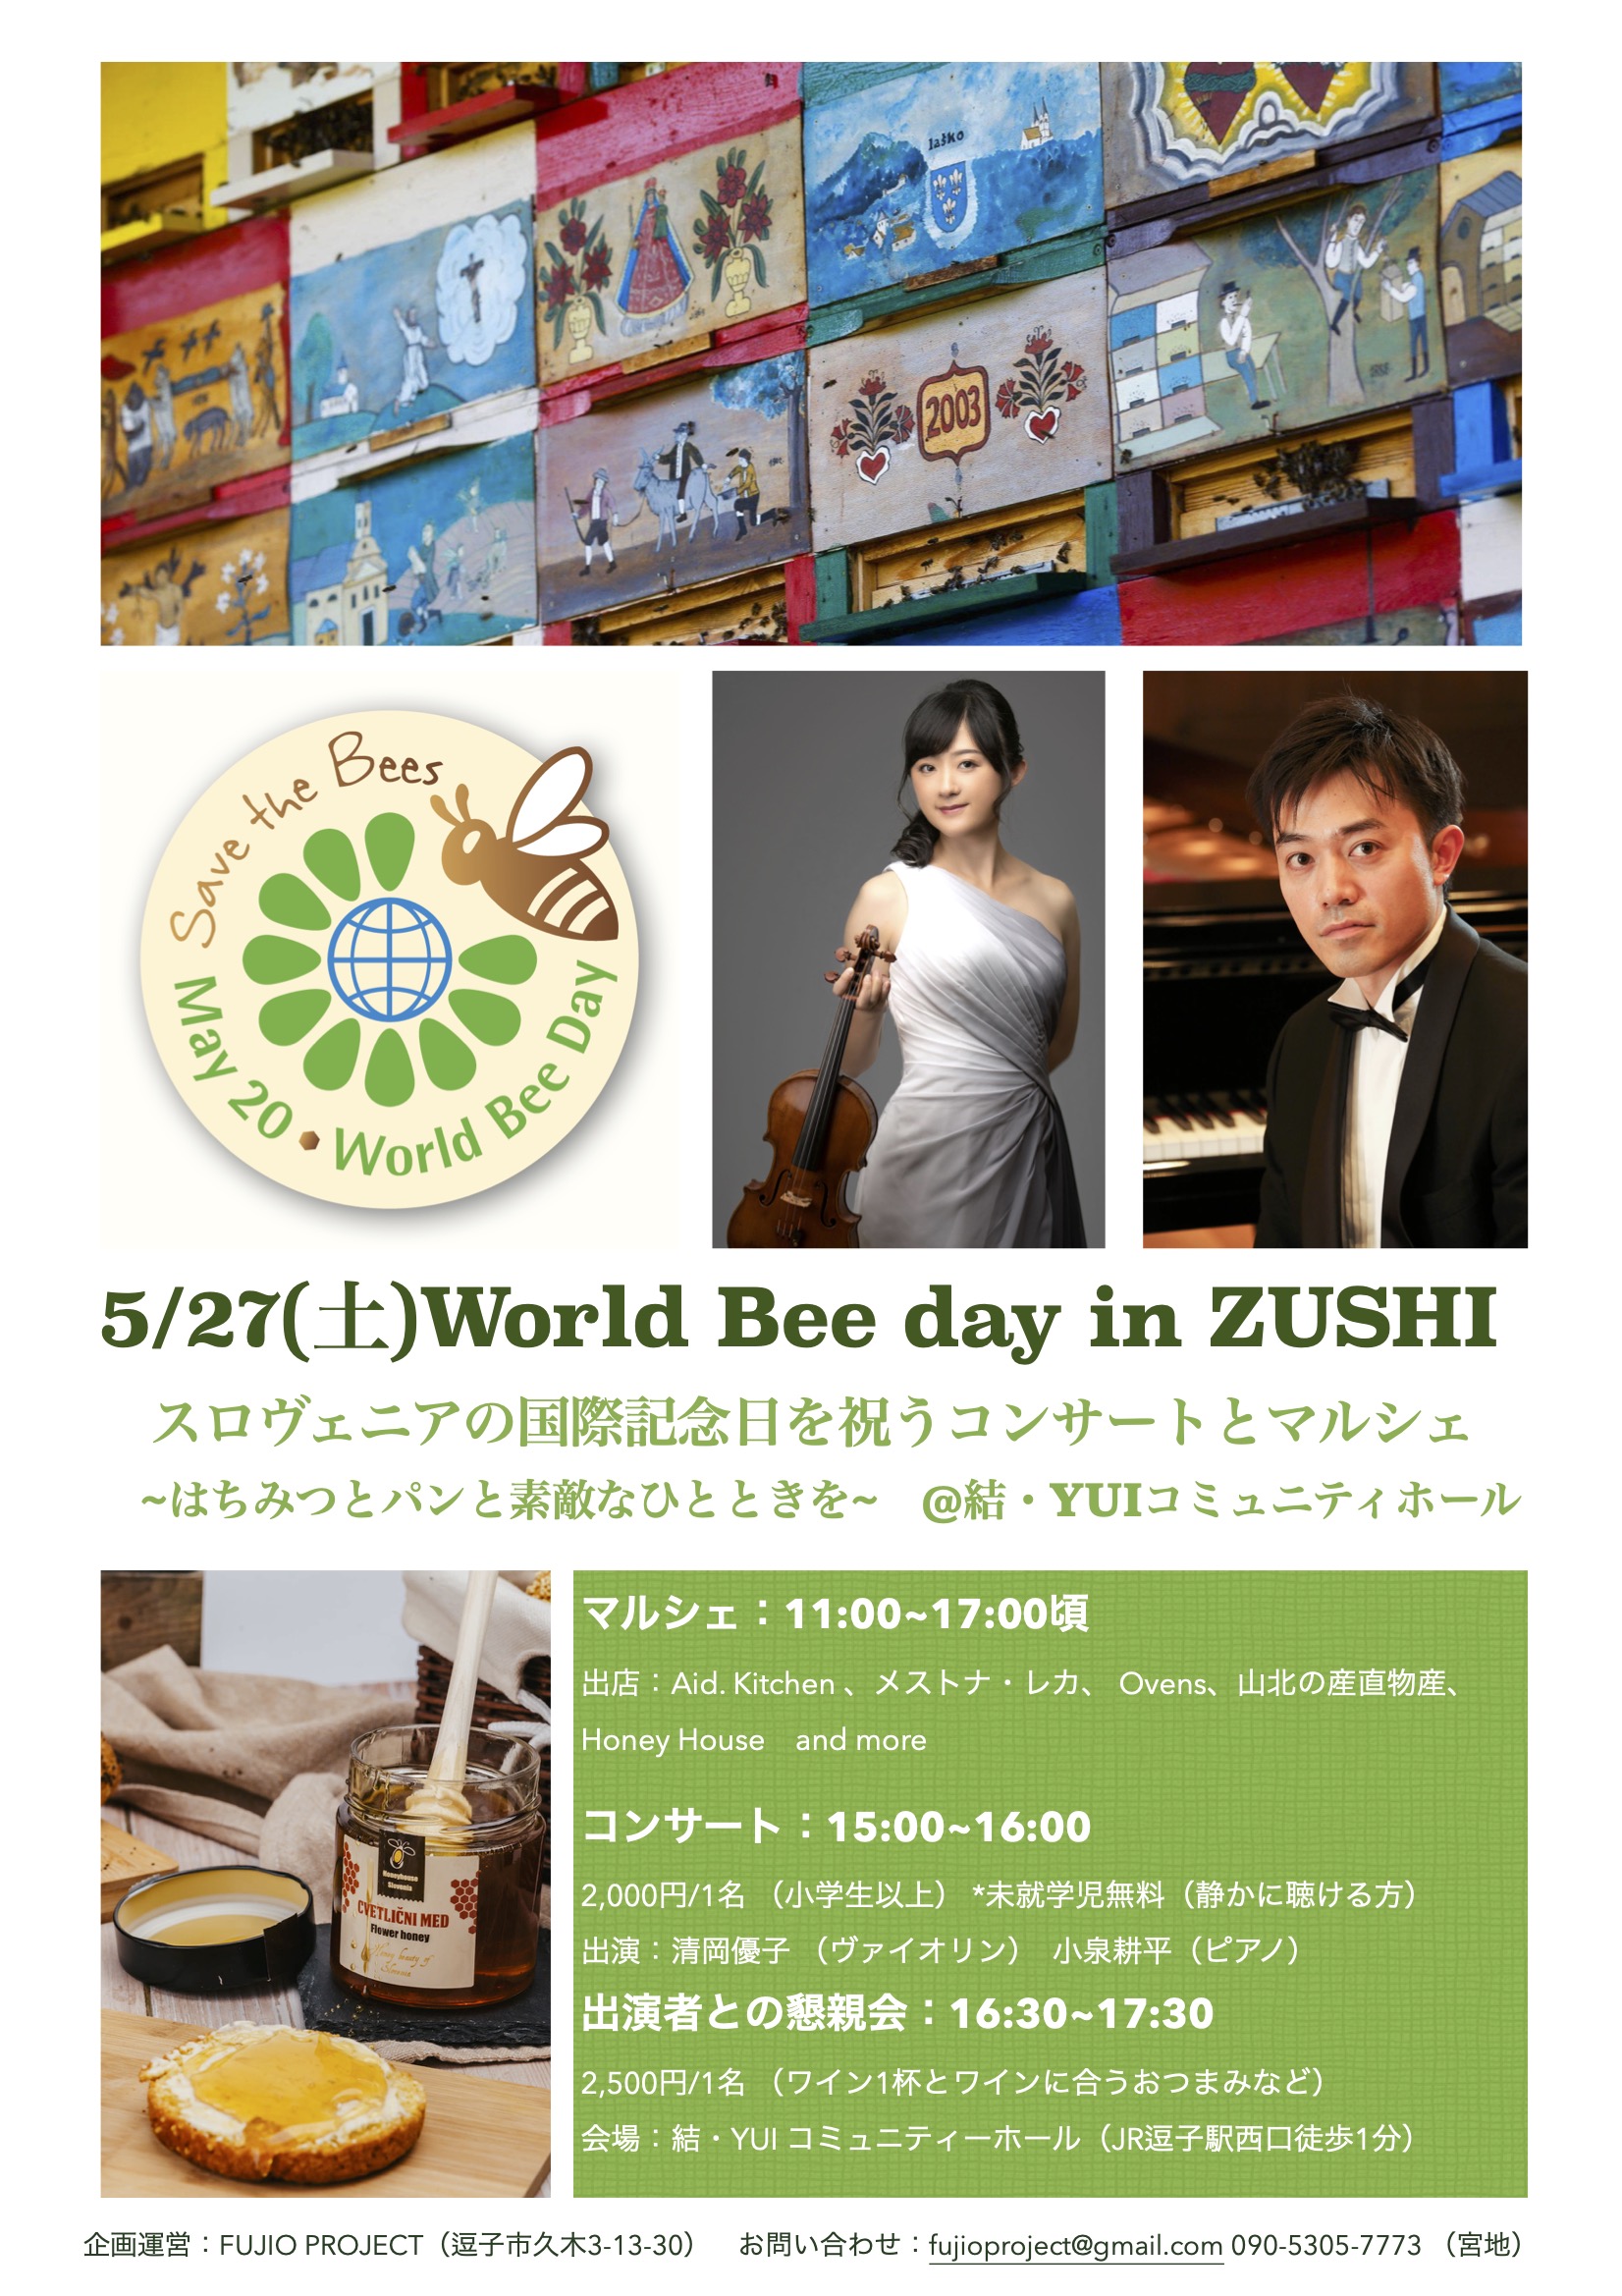 5/27(土)World Bee day in ZUSHI~スロヴェニアの国際記念日を祝うコンサート